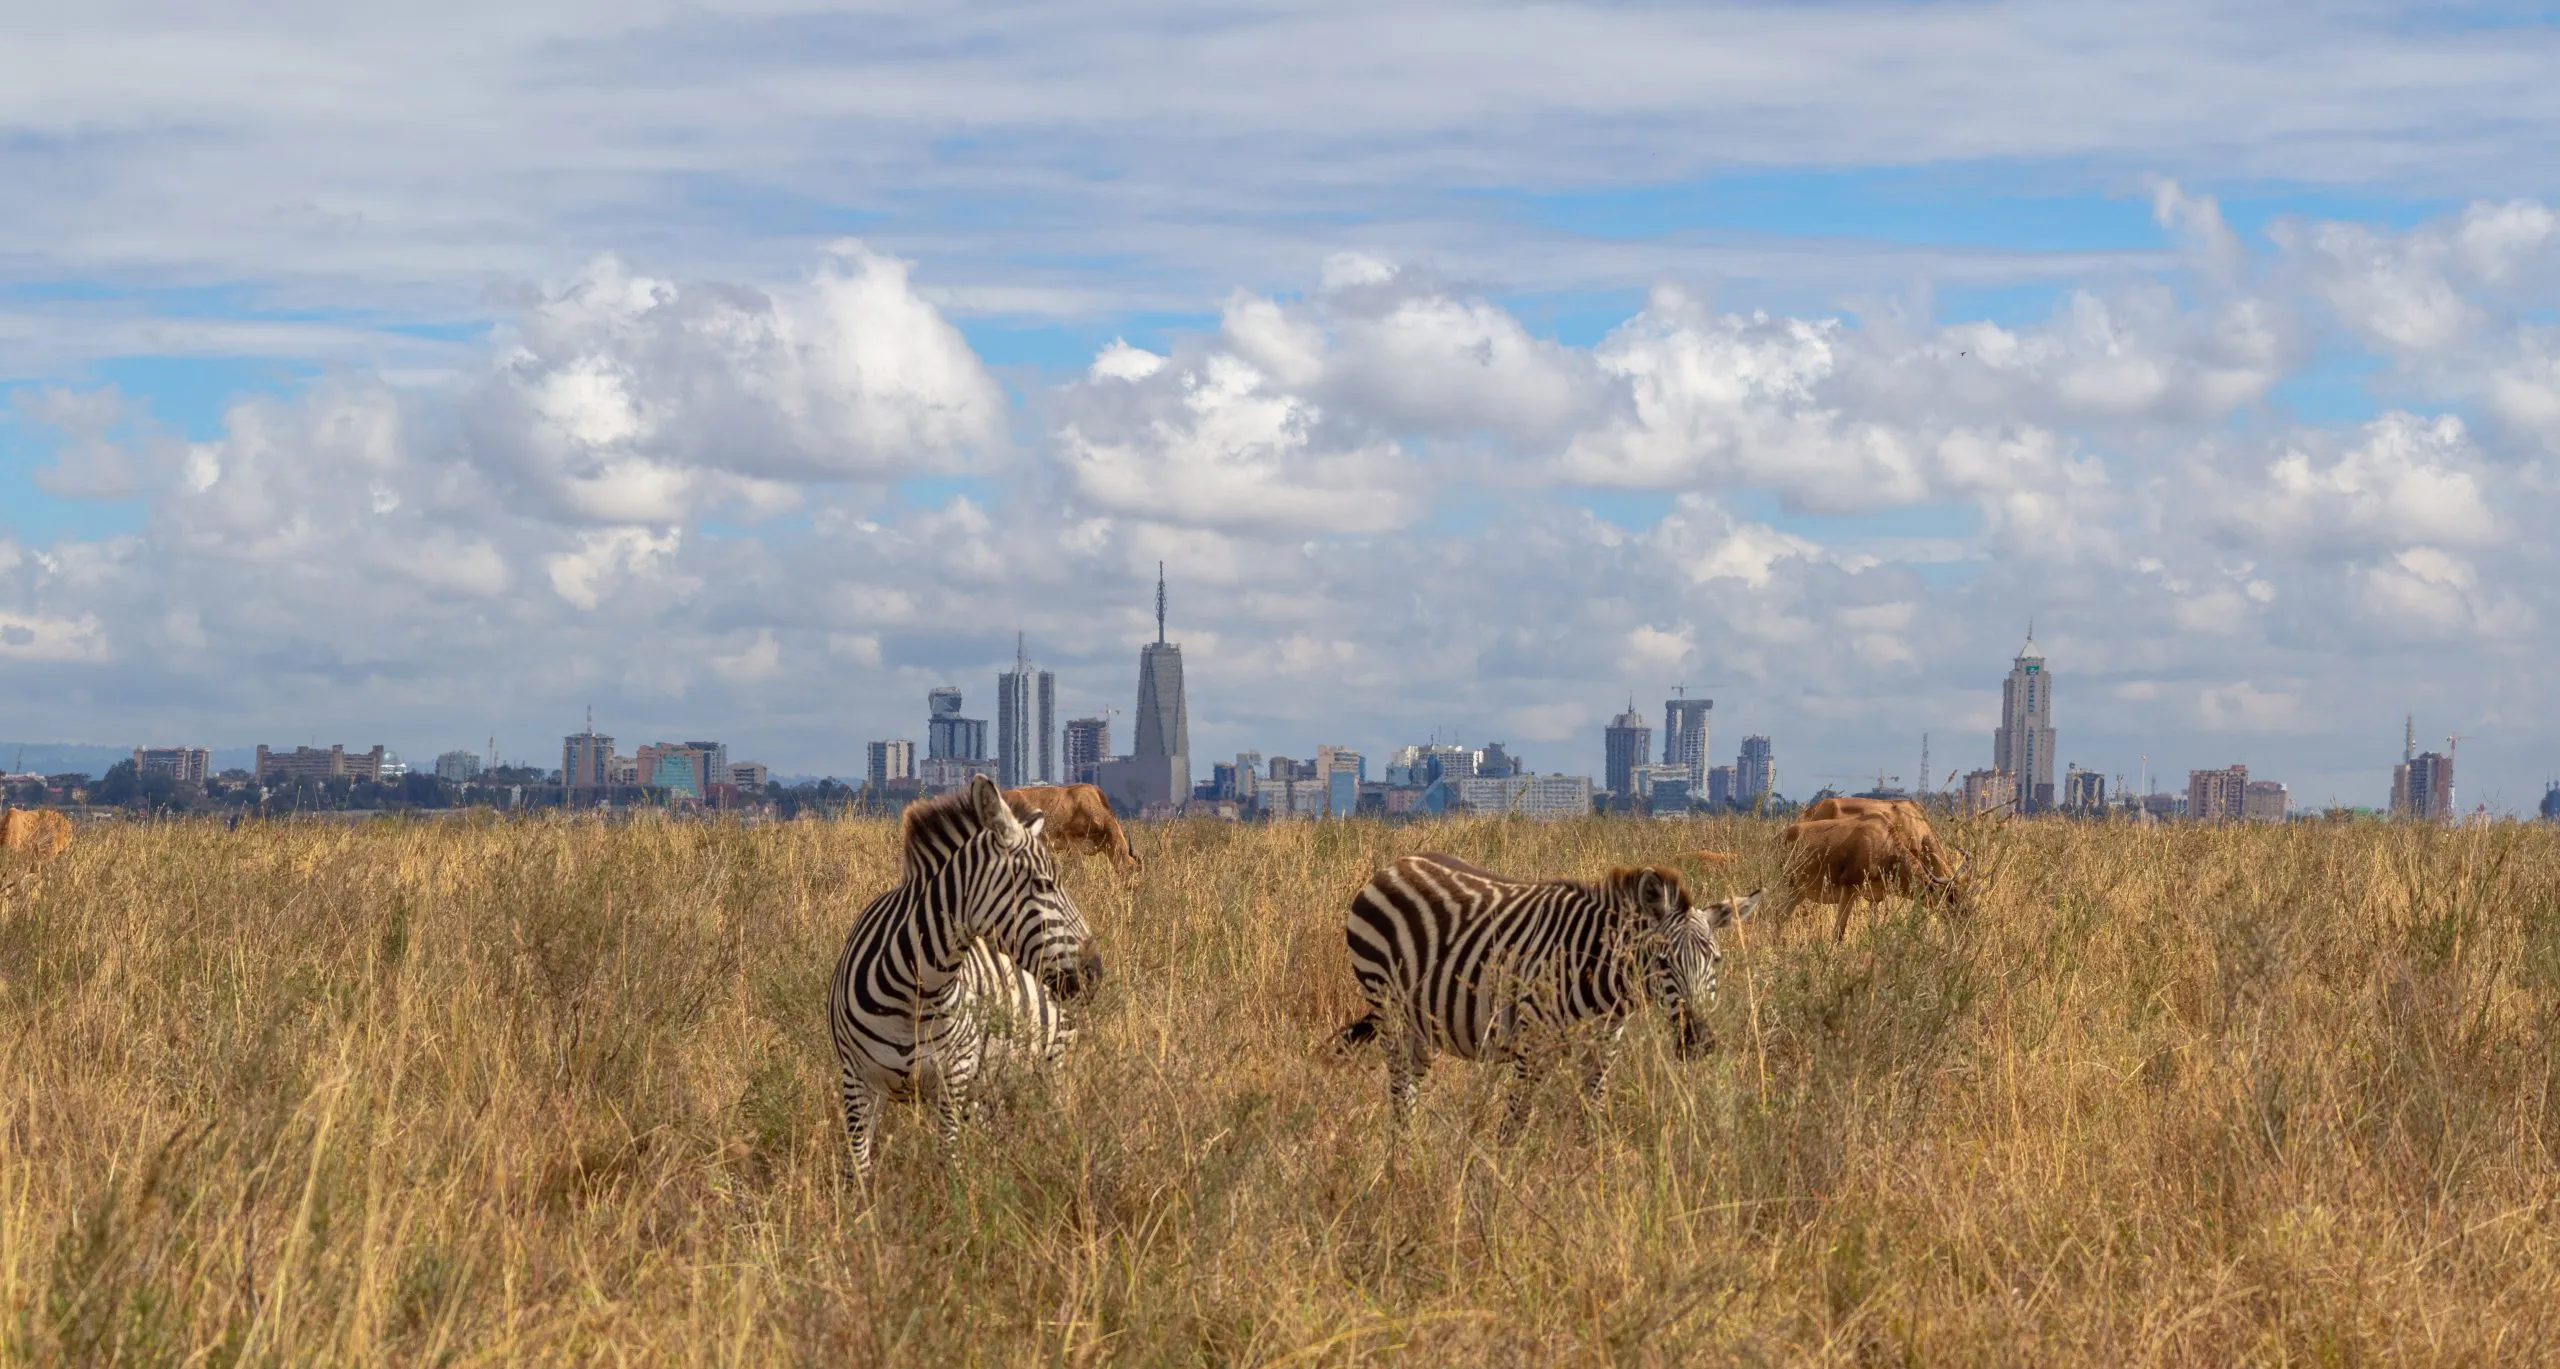 ville dyr og byens skyline, savannedyr spiser gress i Nairobi nasjonalpark, Afrika, med Nairobis skyskrapere i bakgrunnen